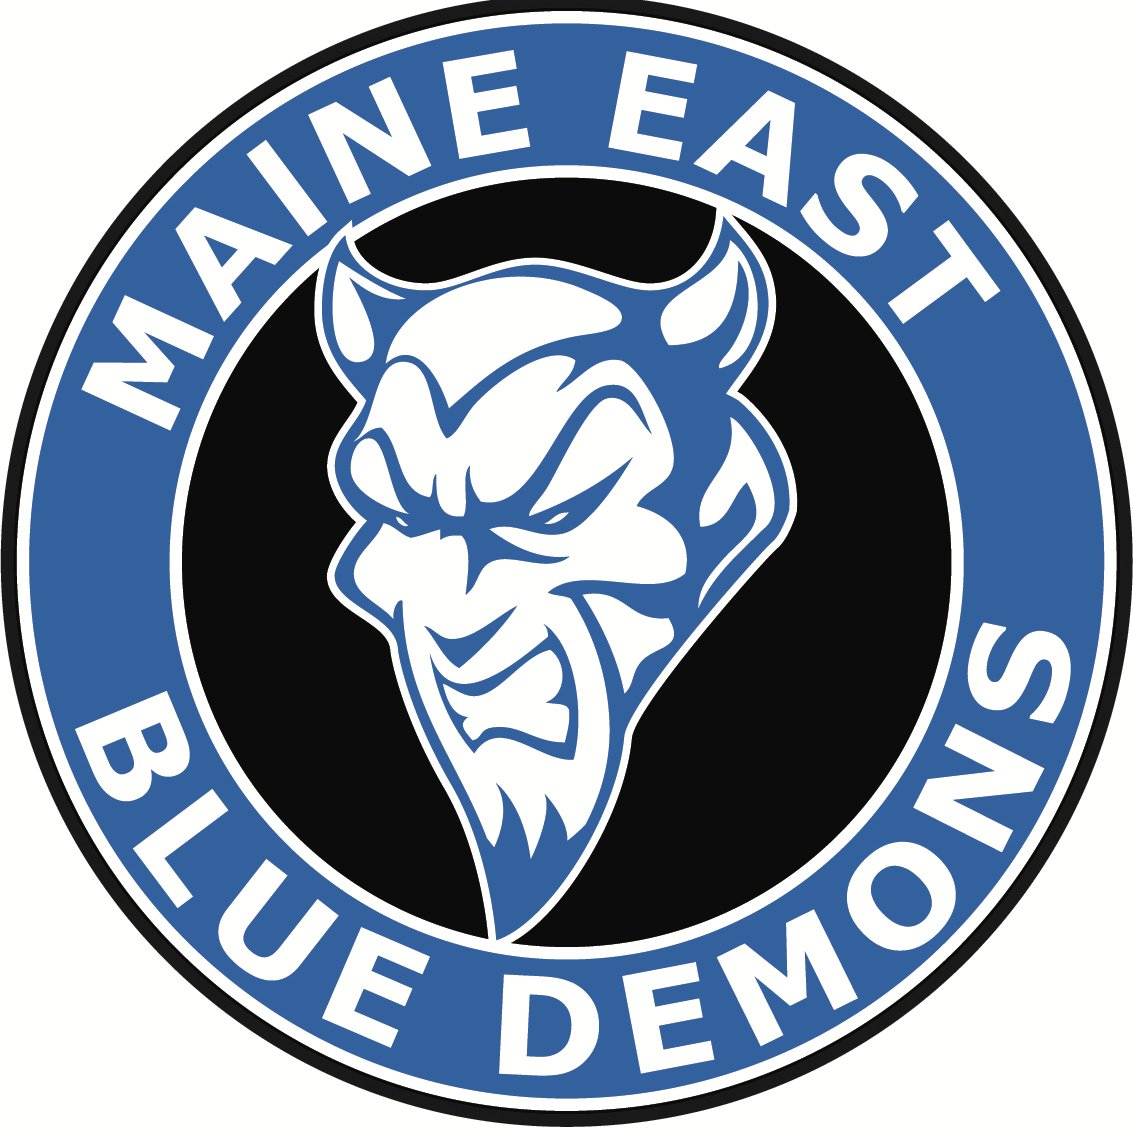 Maine East Boys Basketball